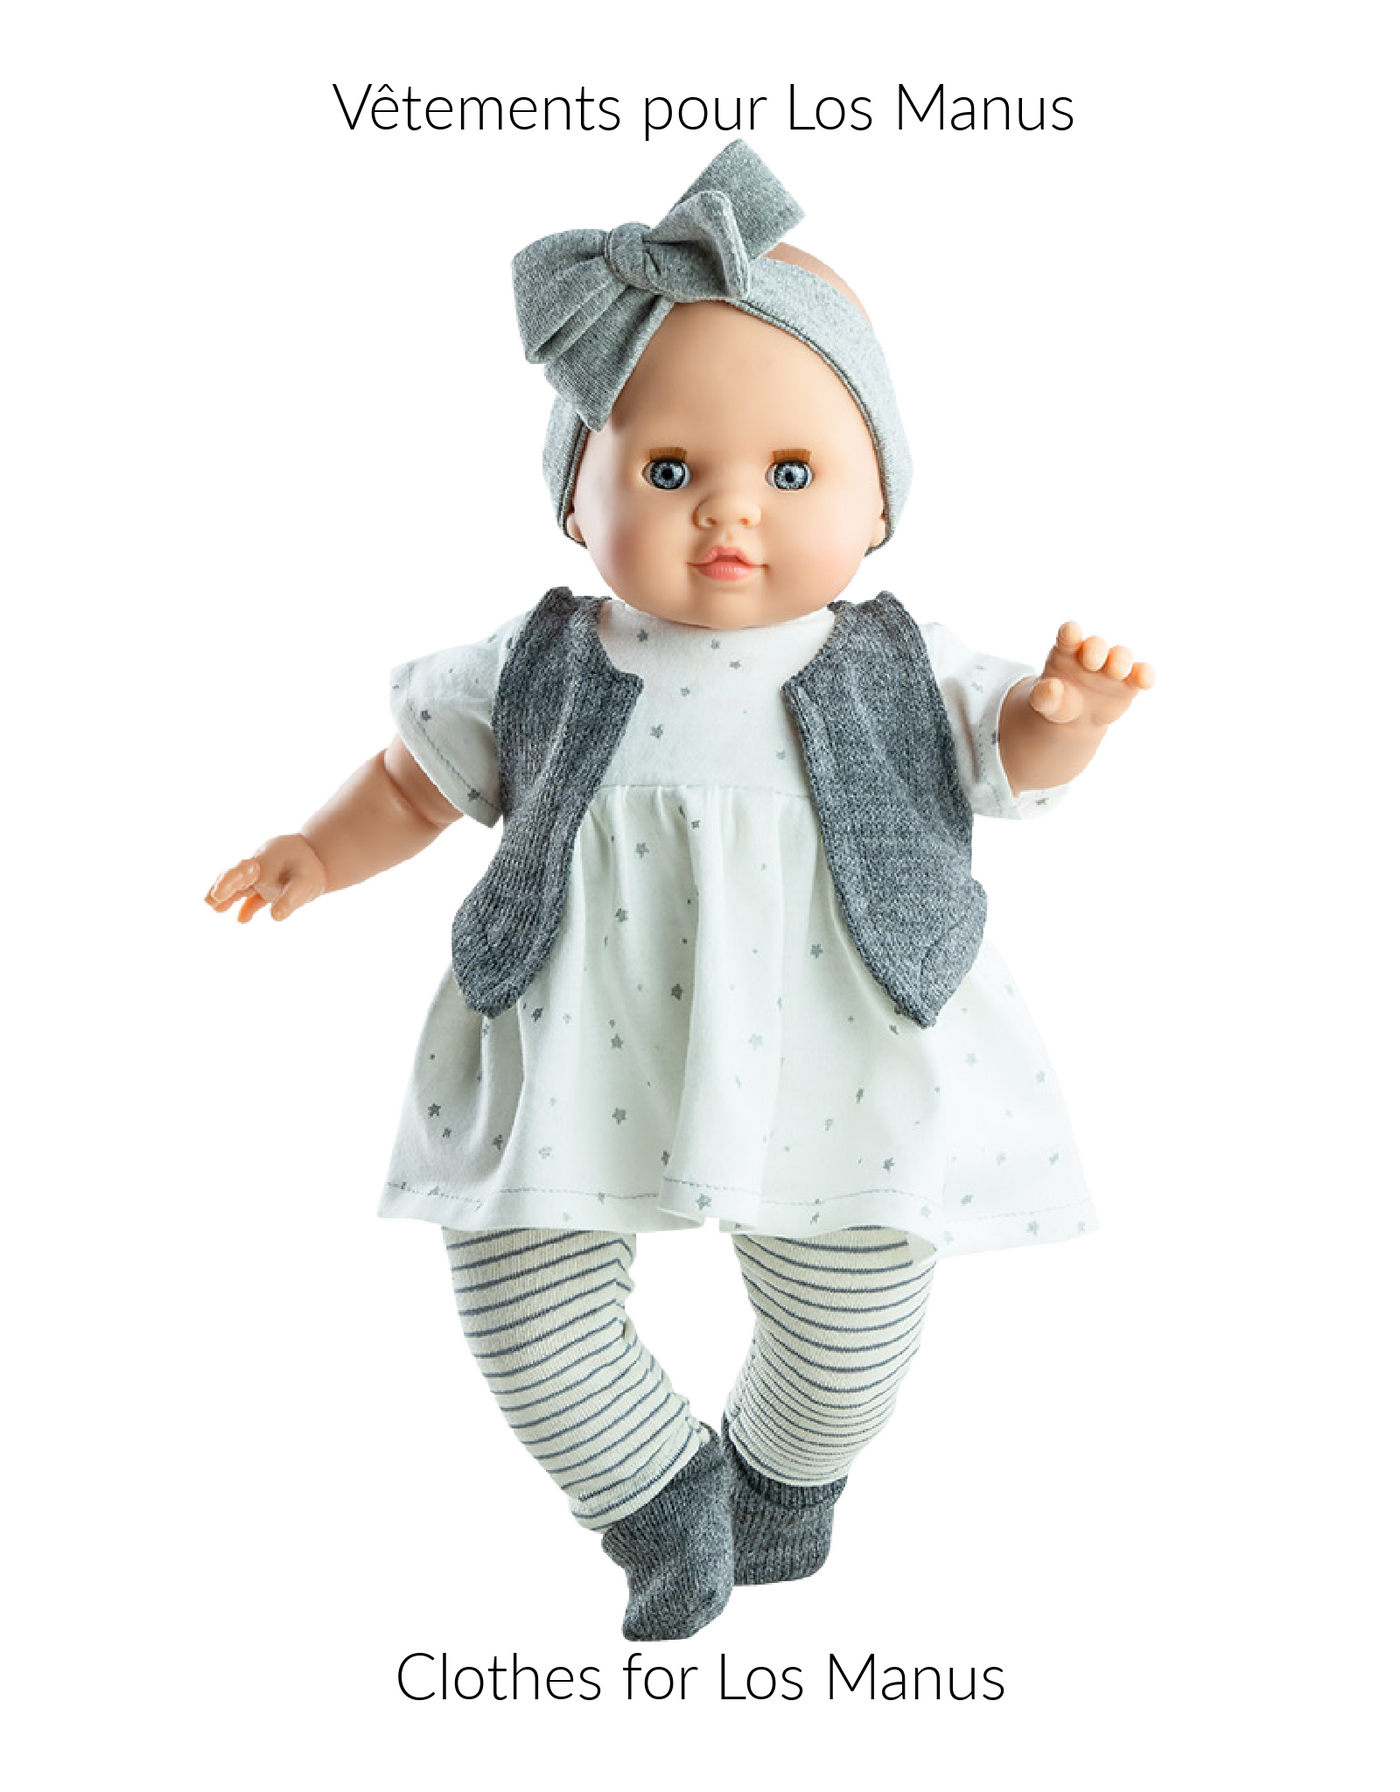 Vêtement pour poupée Los Manus - Robe blanche, legging ligné, veste et bandeau gris - Paola Reina